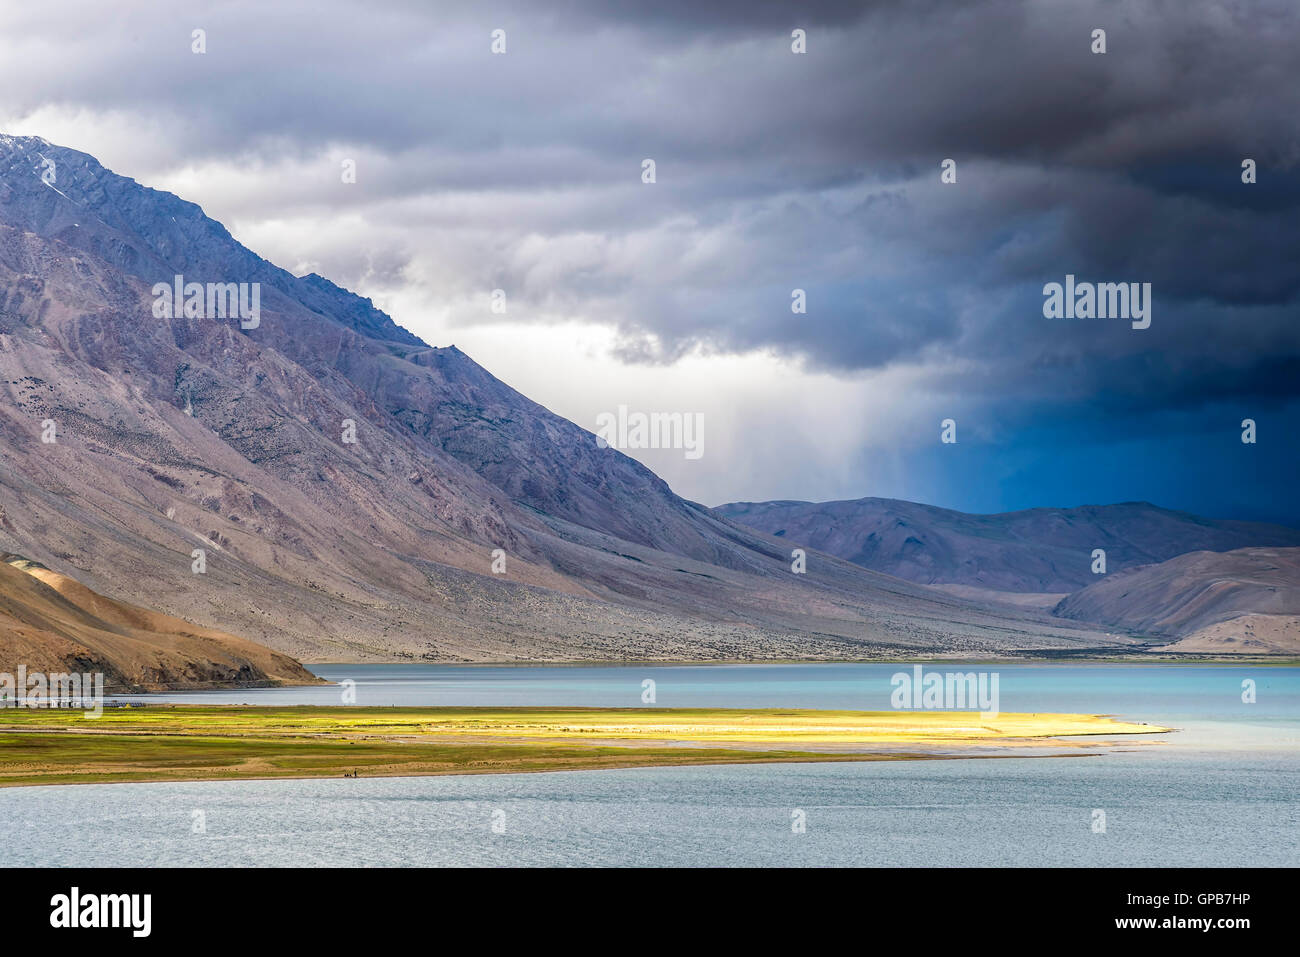 Ein Sturm naht Tso Moriri See in Ladakh, Indien. Tso Moriri ist ein See in der ladakhischen Changthang-Plateau. Stockfoto